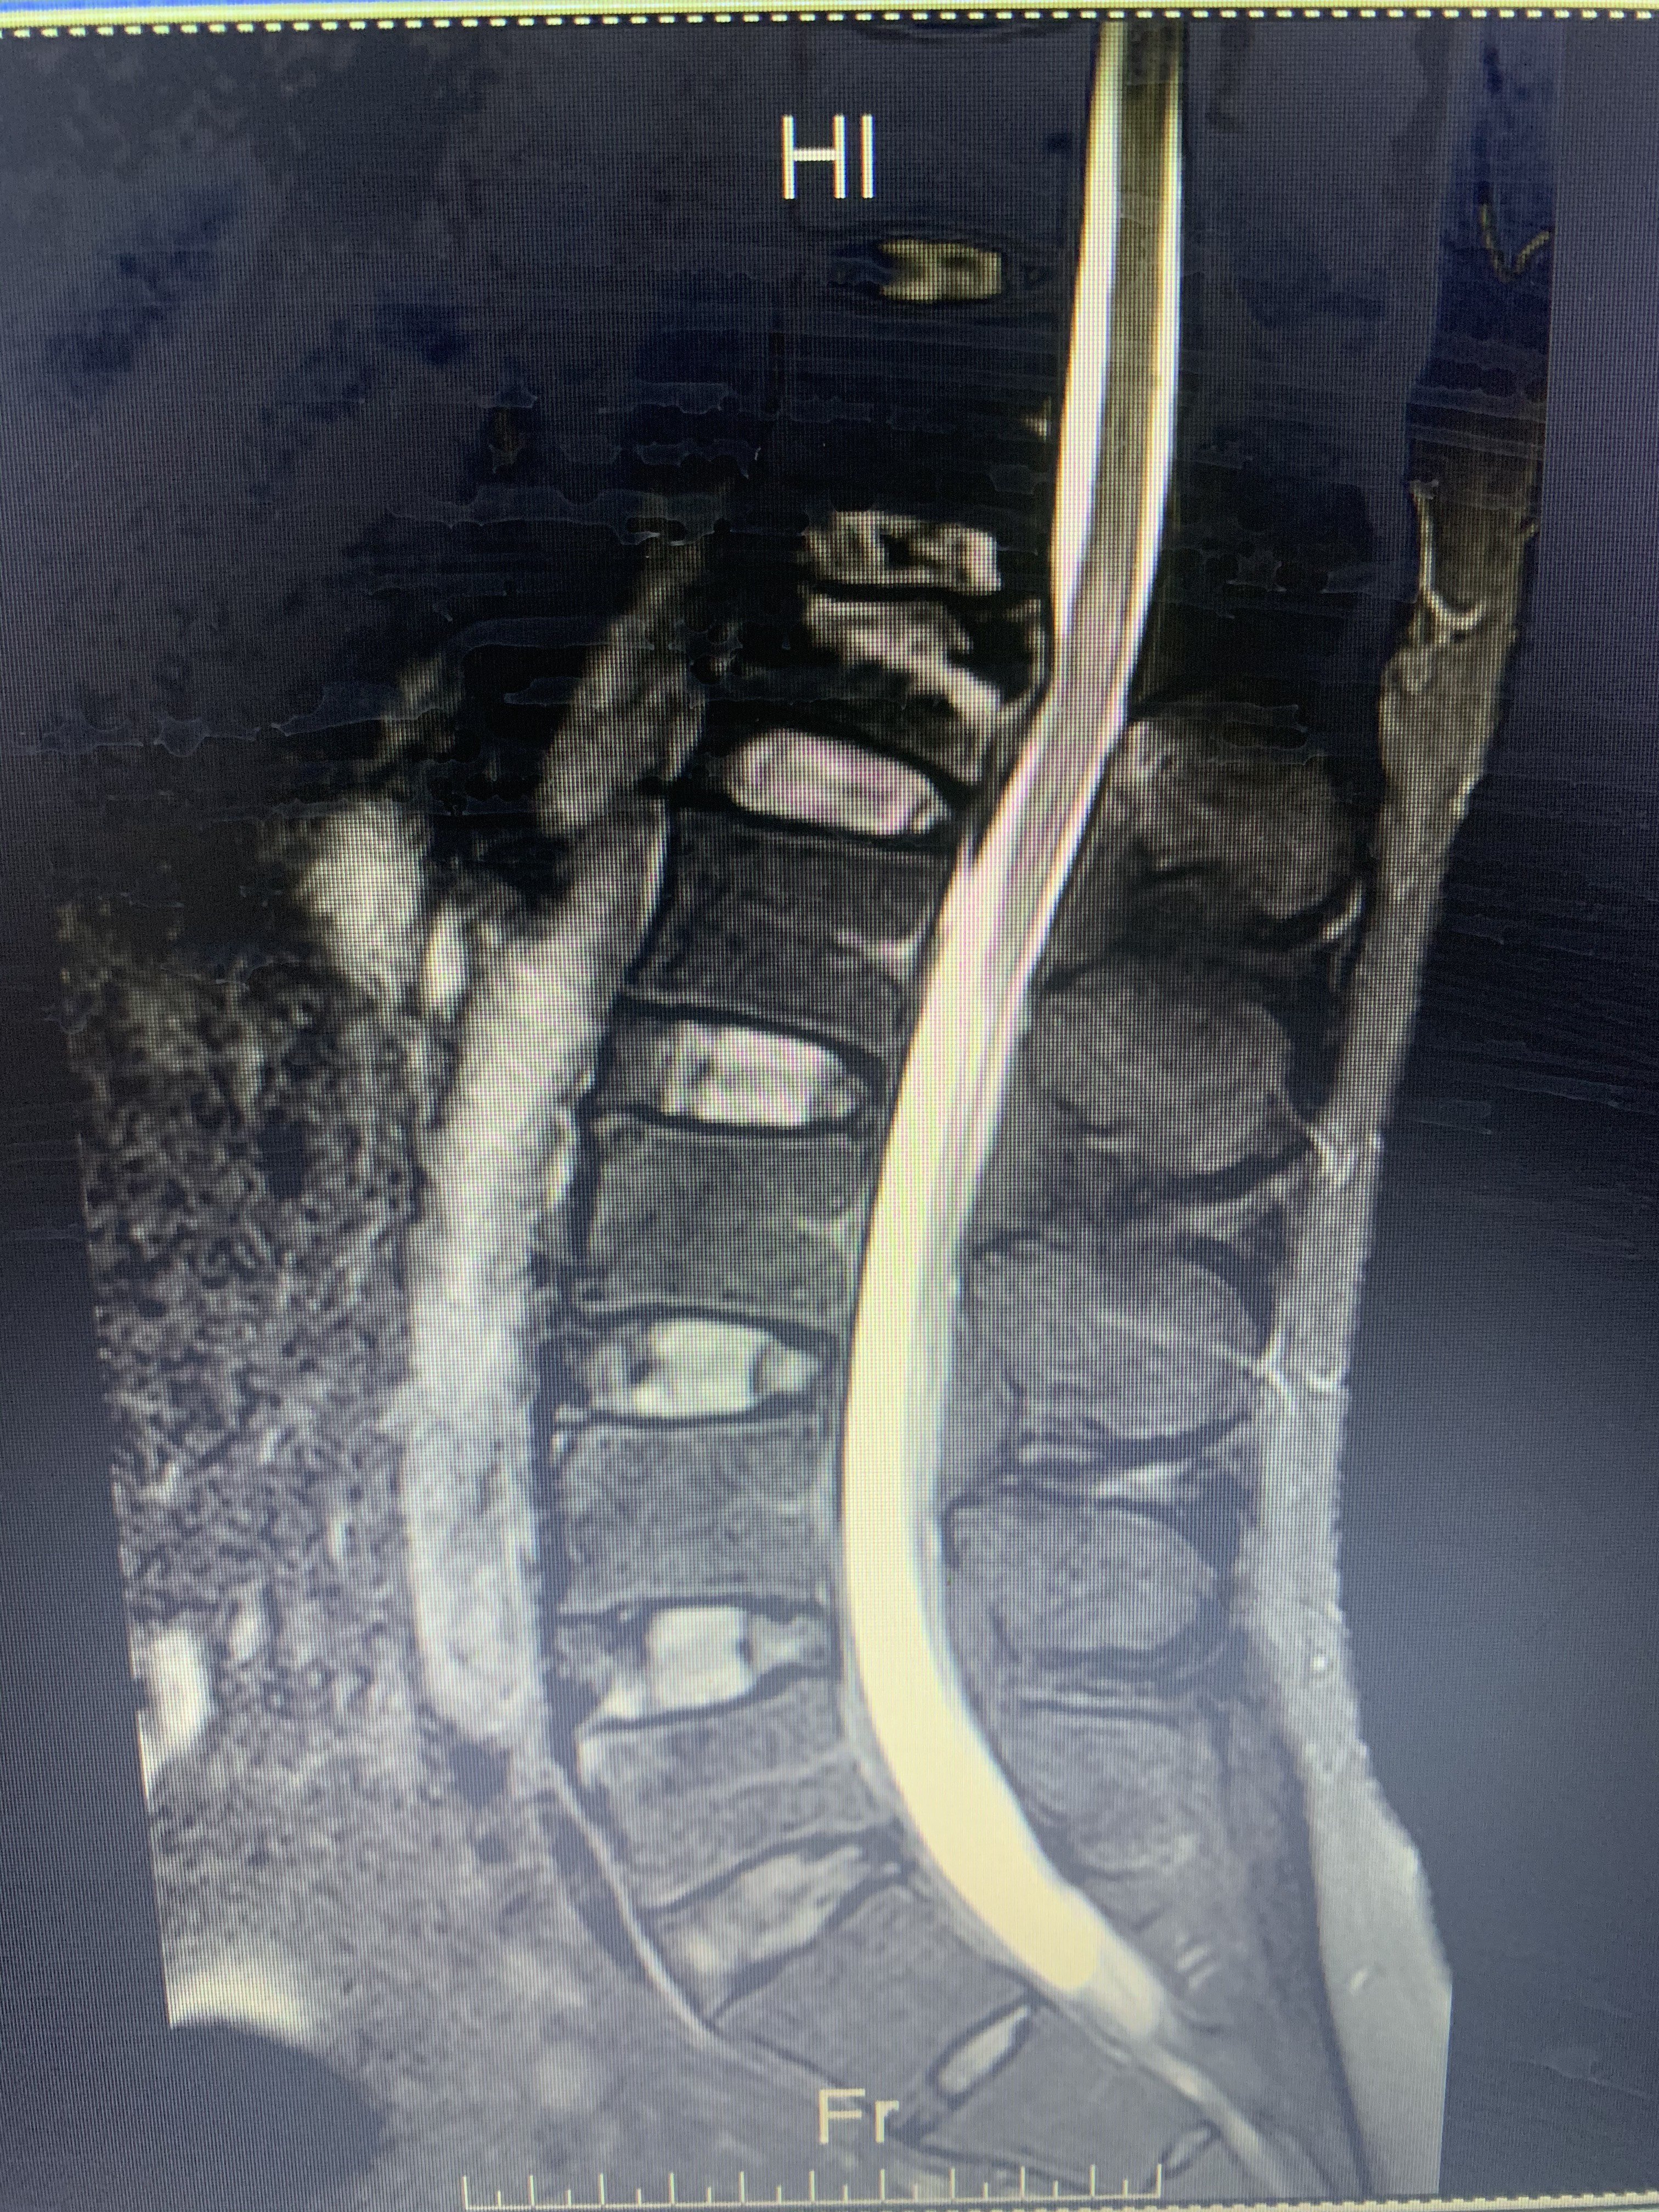 腰椎爆裂骨折并脊髓损伤 